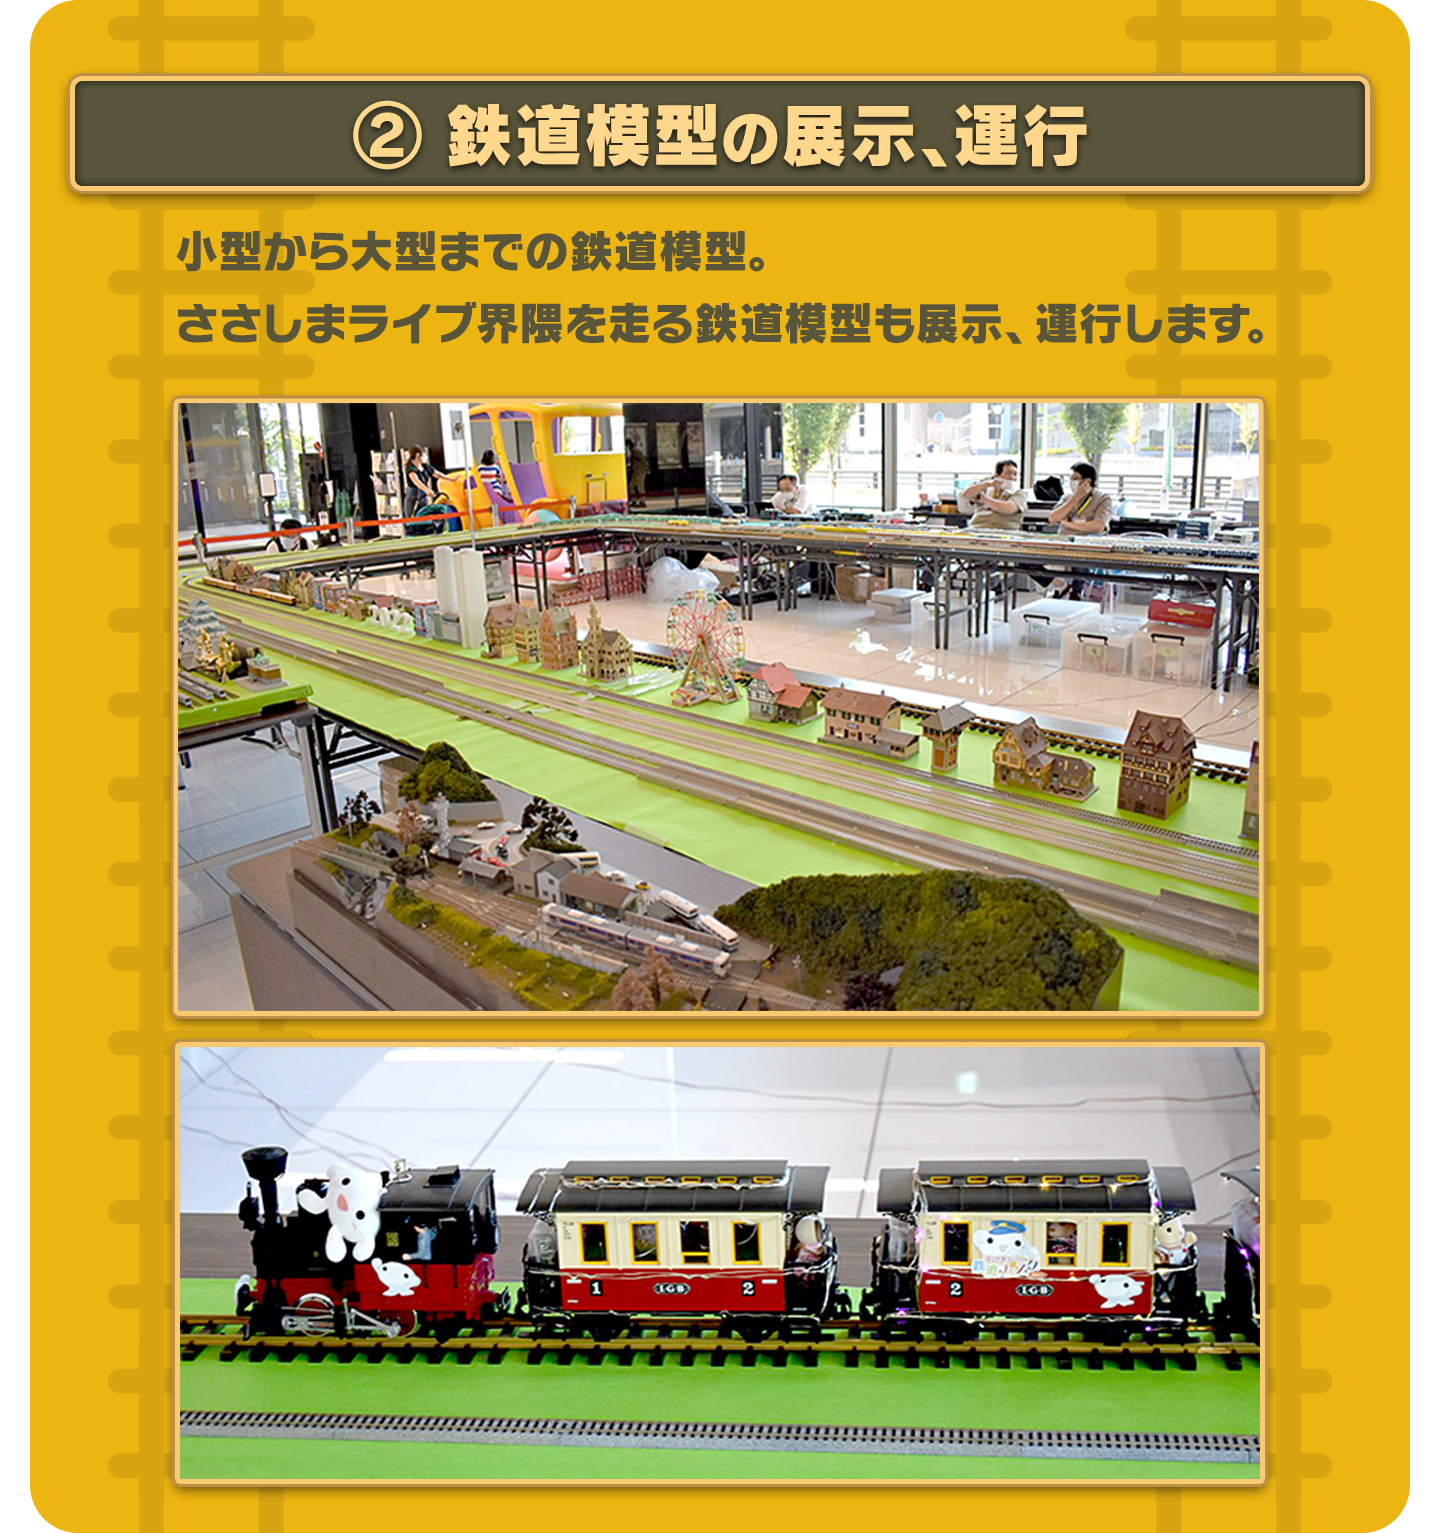 ②鉄道模型の展示、運行